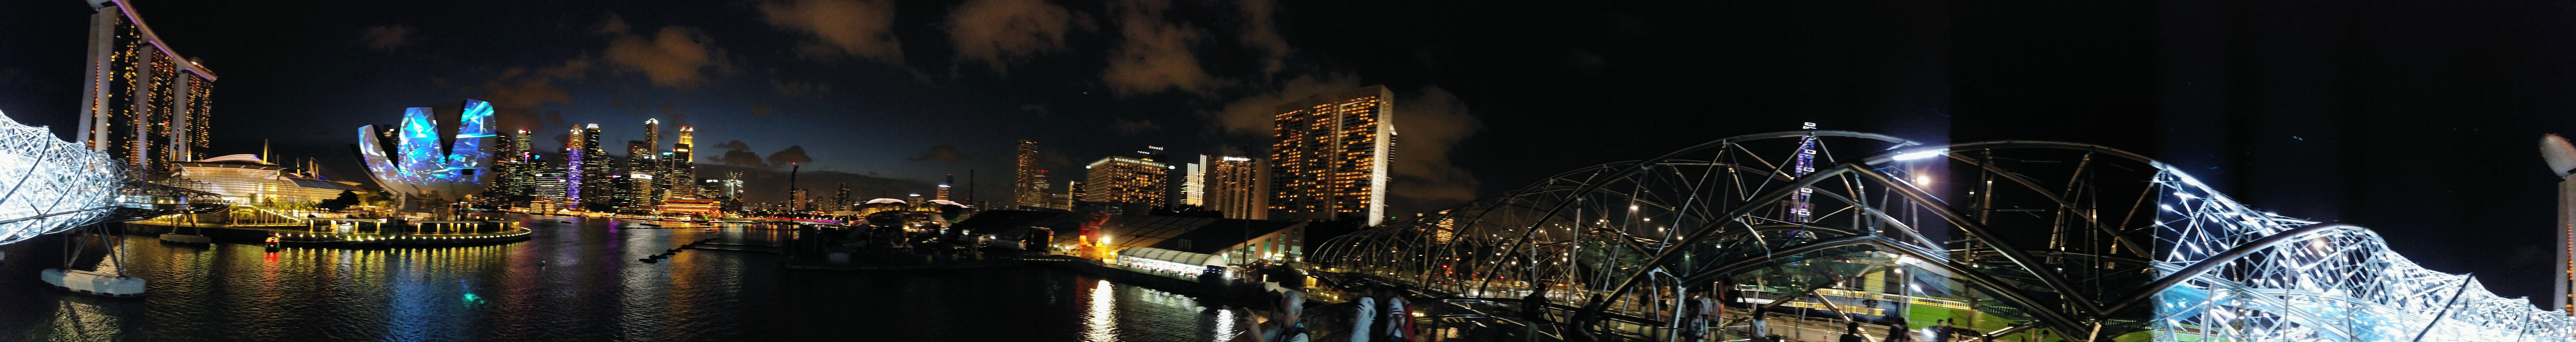 Singapore bayfront panorama.jpg